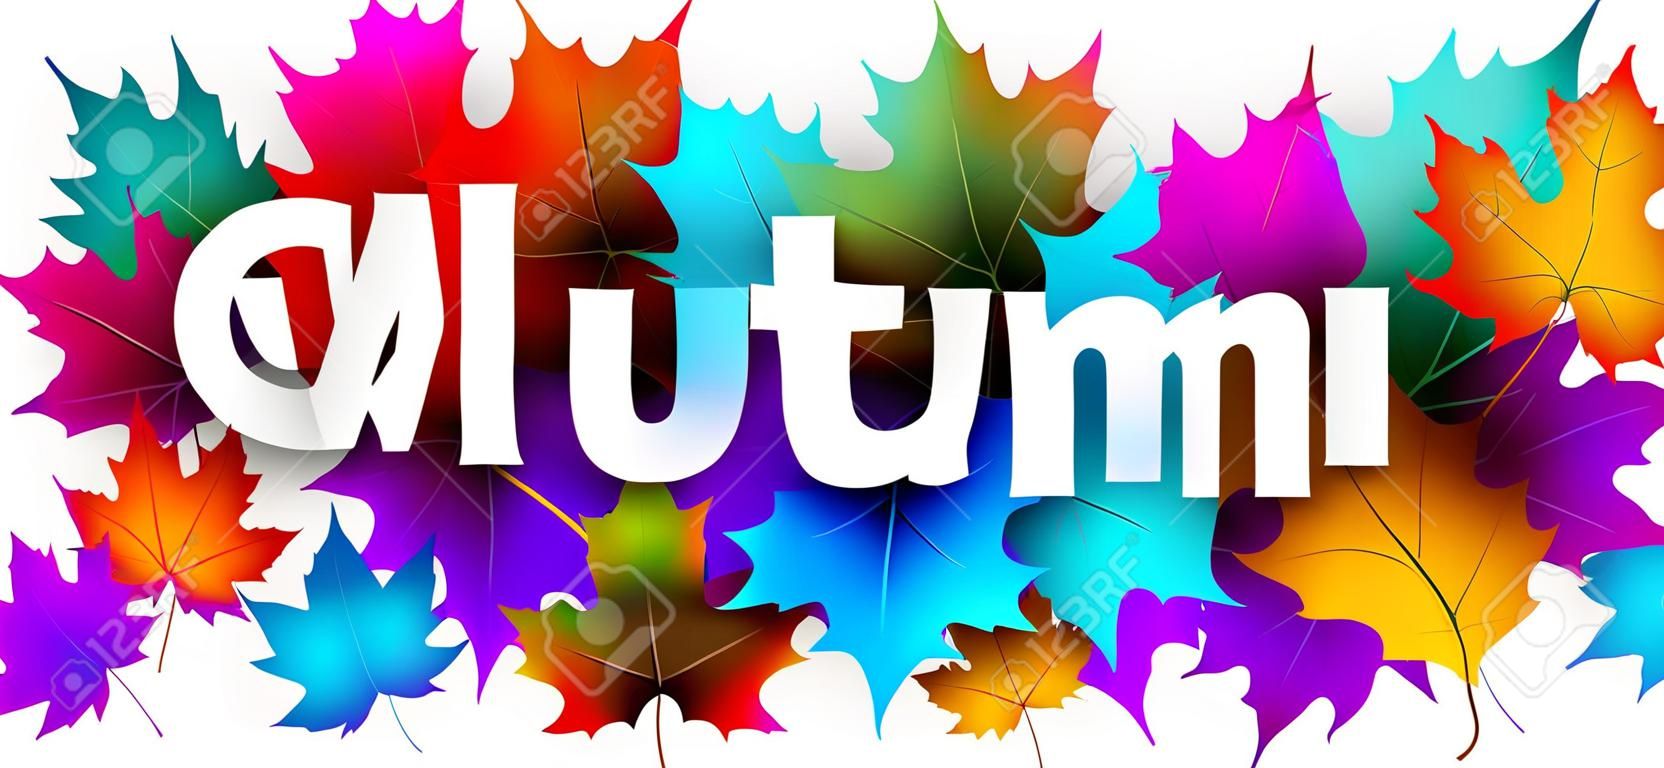 Cartel de bienvenida de otoño con coloridas hojas de arce. Fondo de vector.